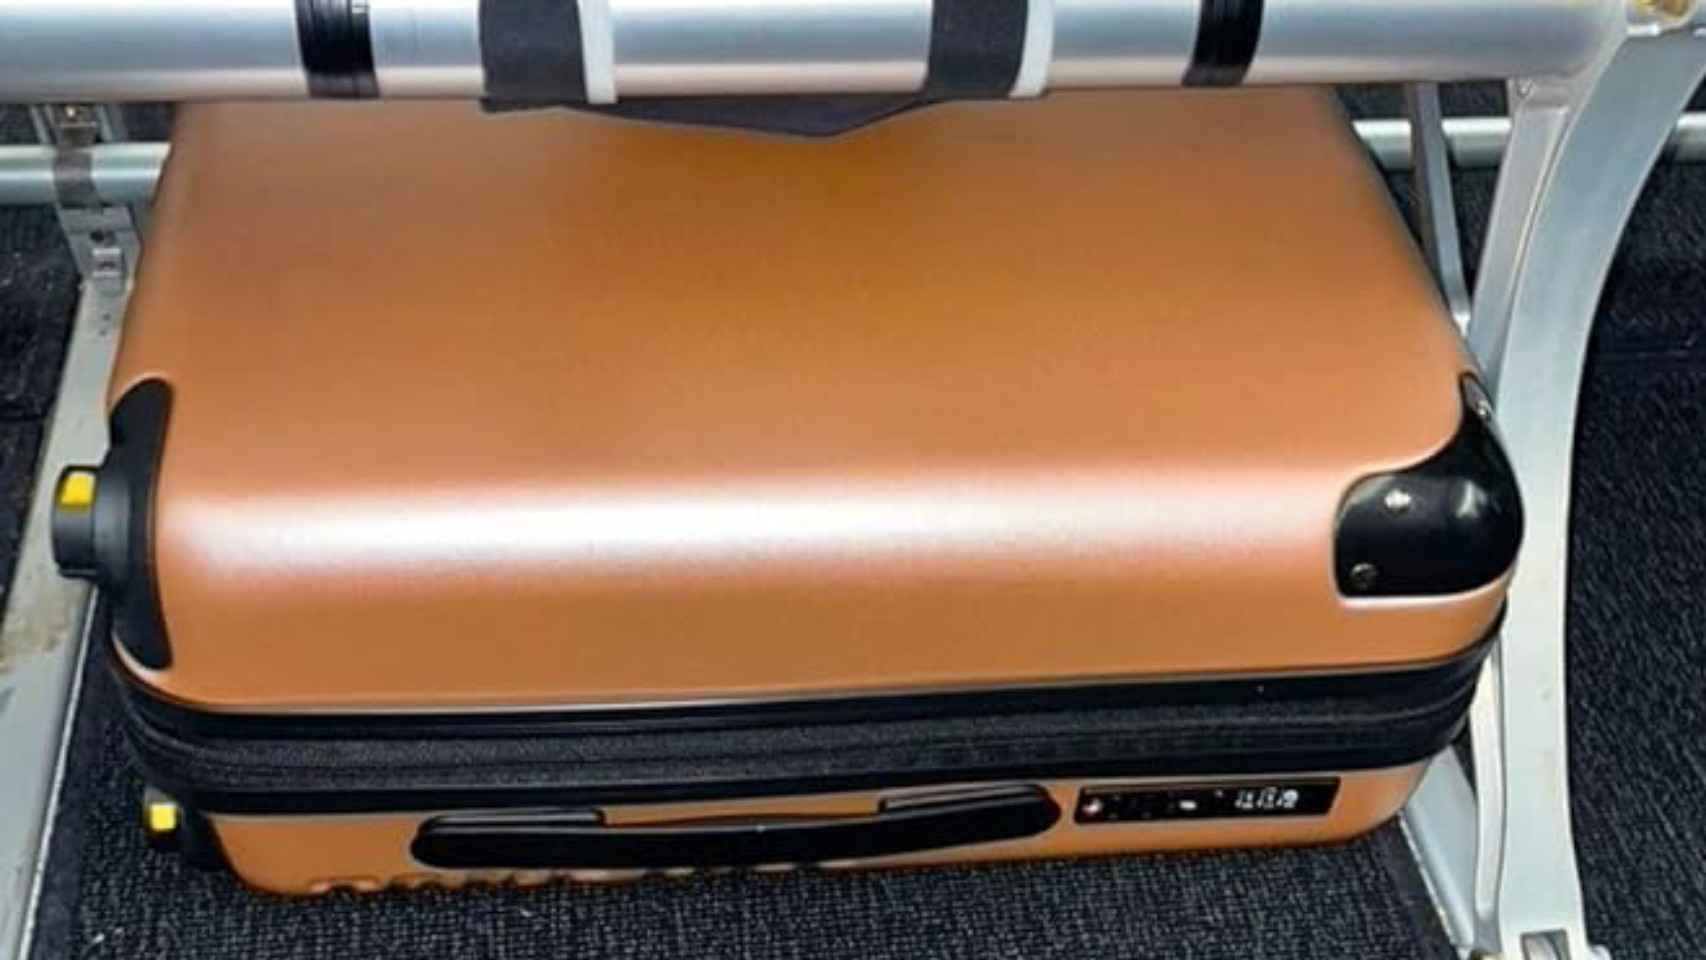 La maleta sin ruedas cabe bajo los asientos del avión